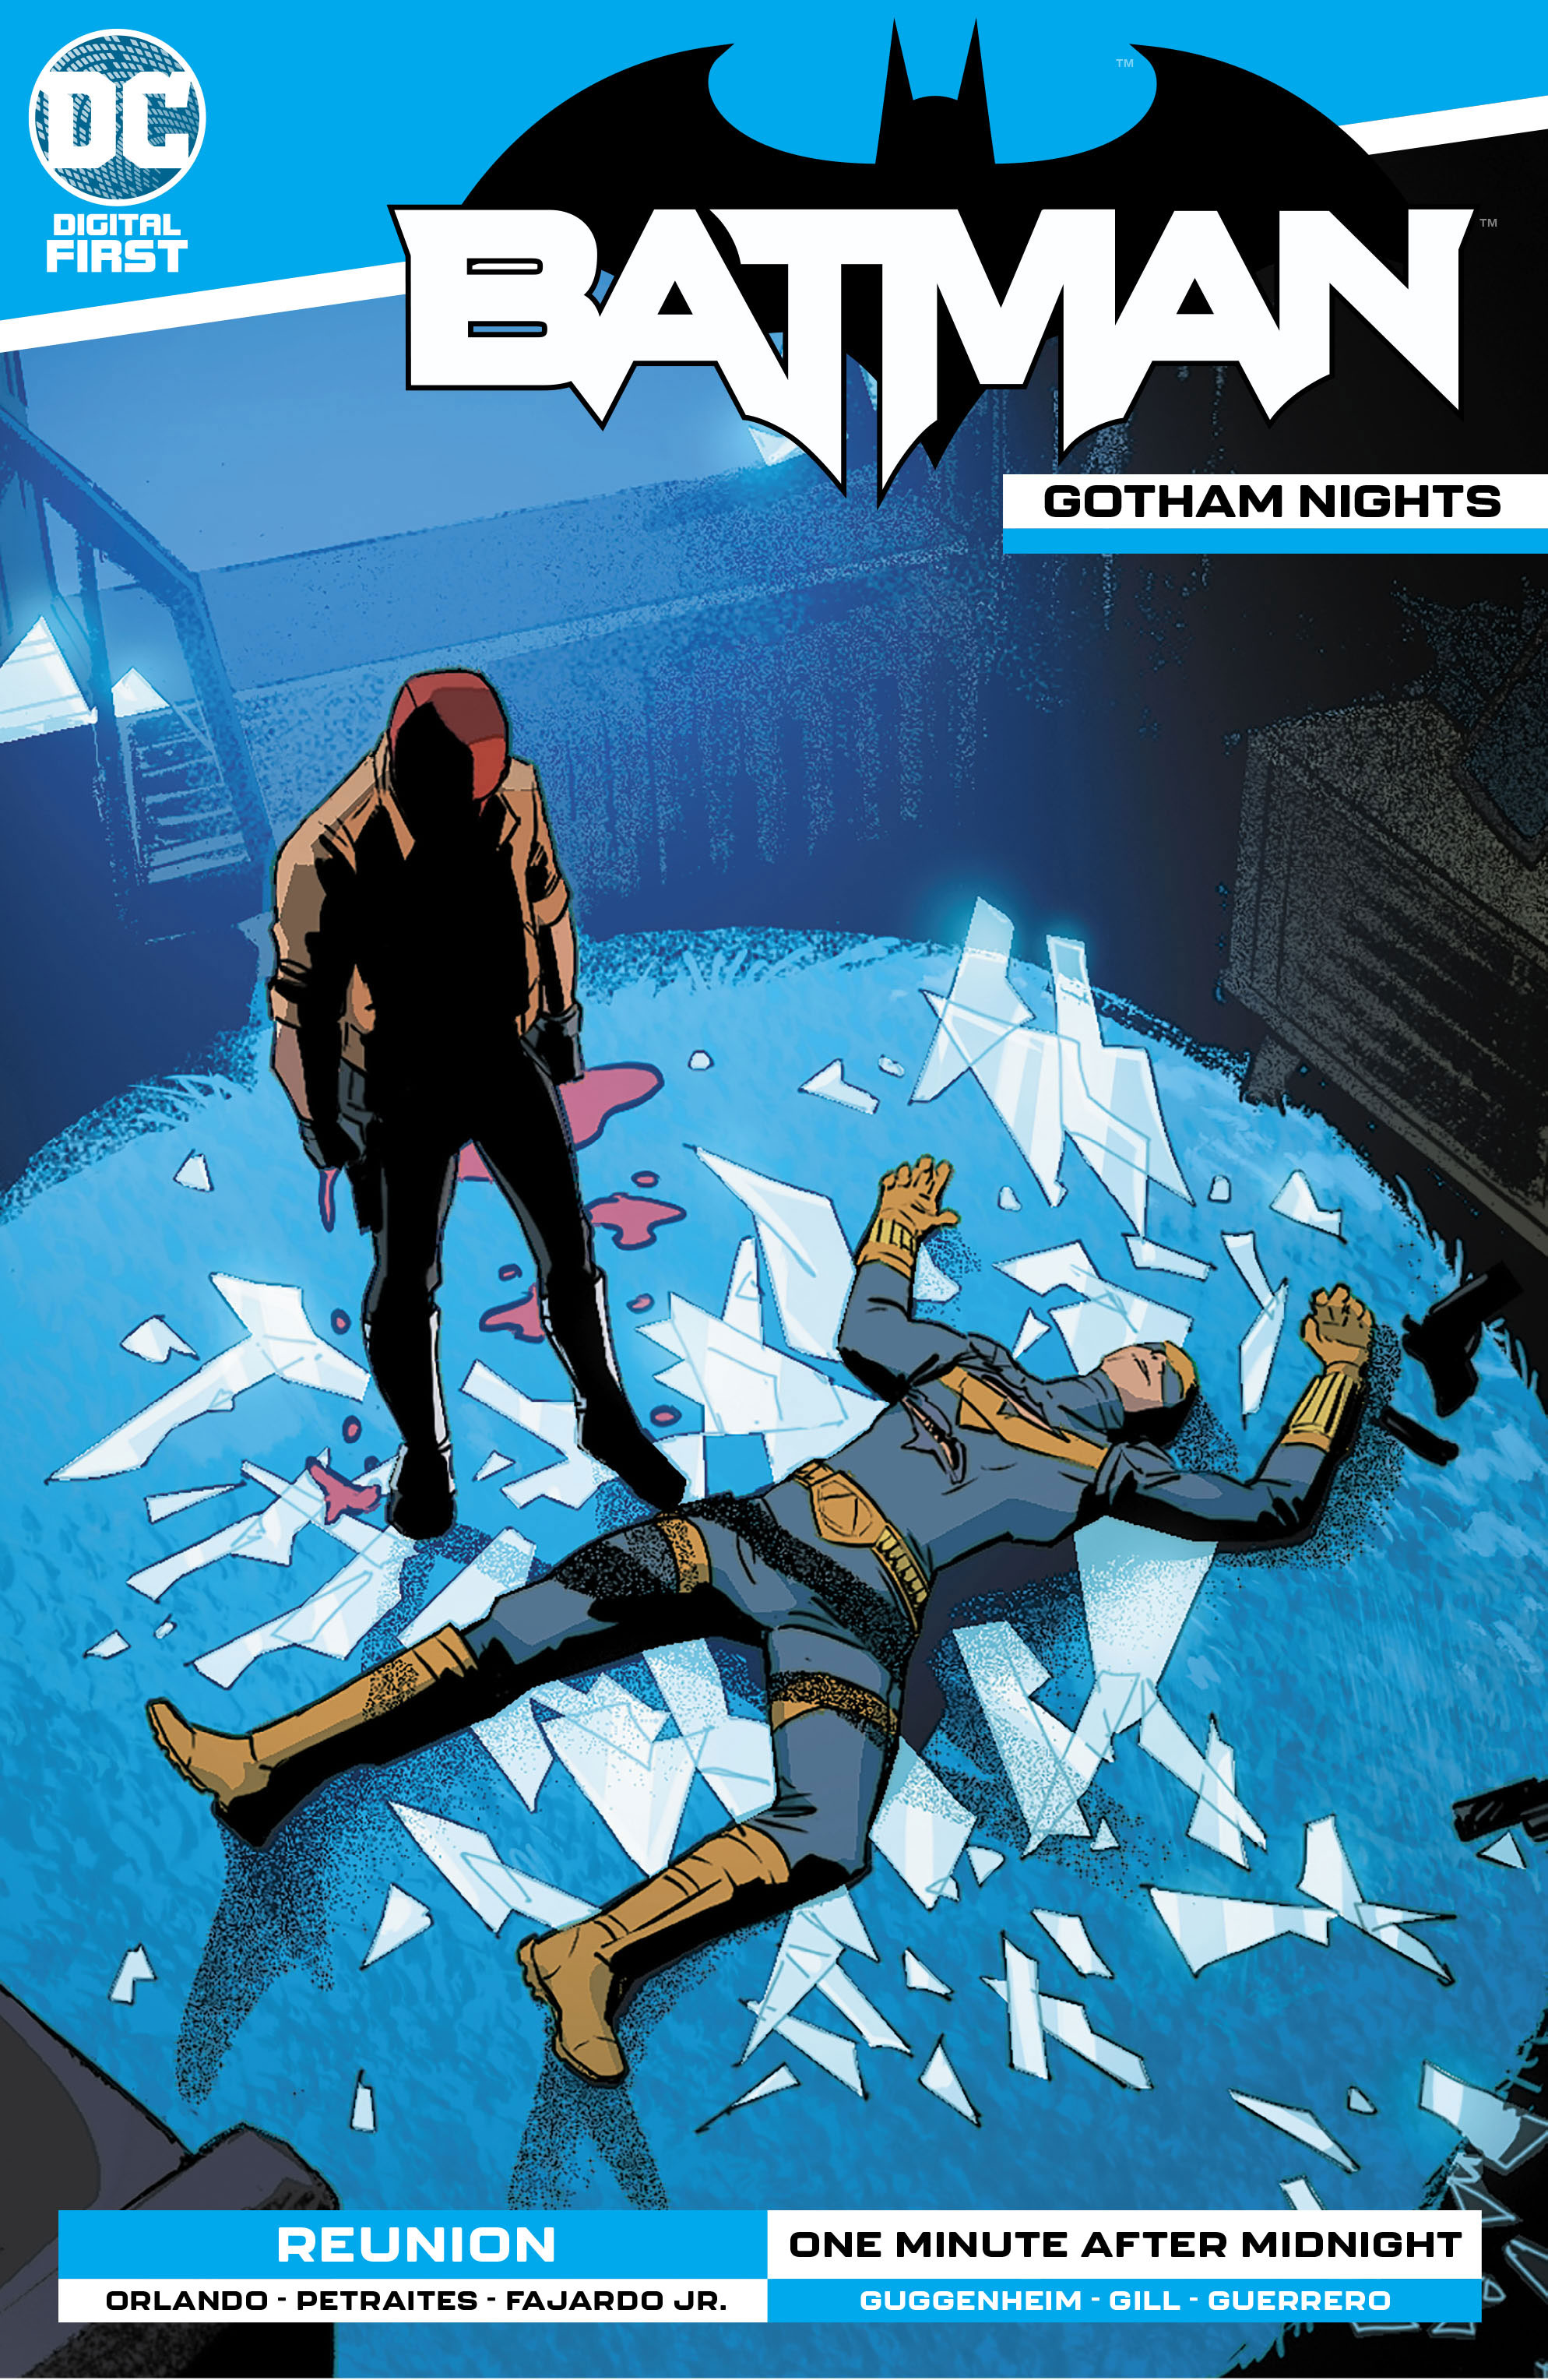 BATMAN-GOTHAM-NIGHTS-Cv11